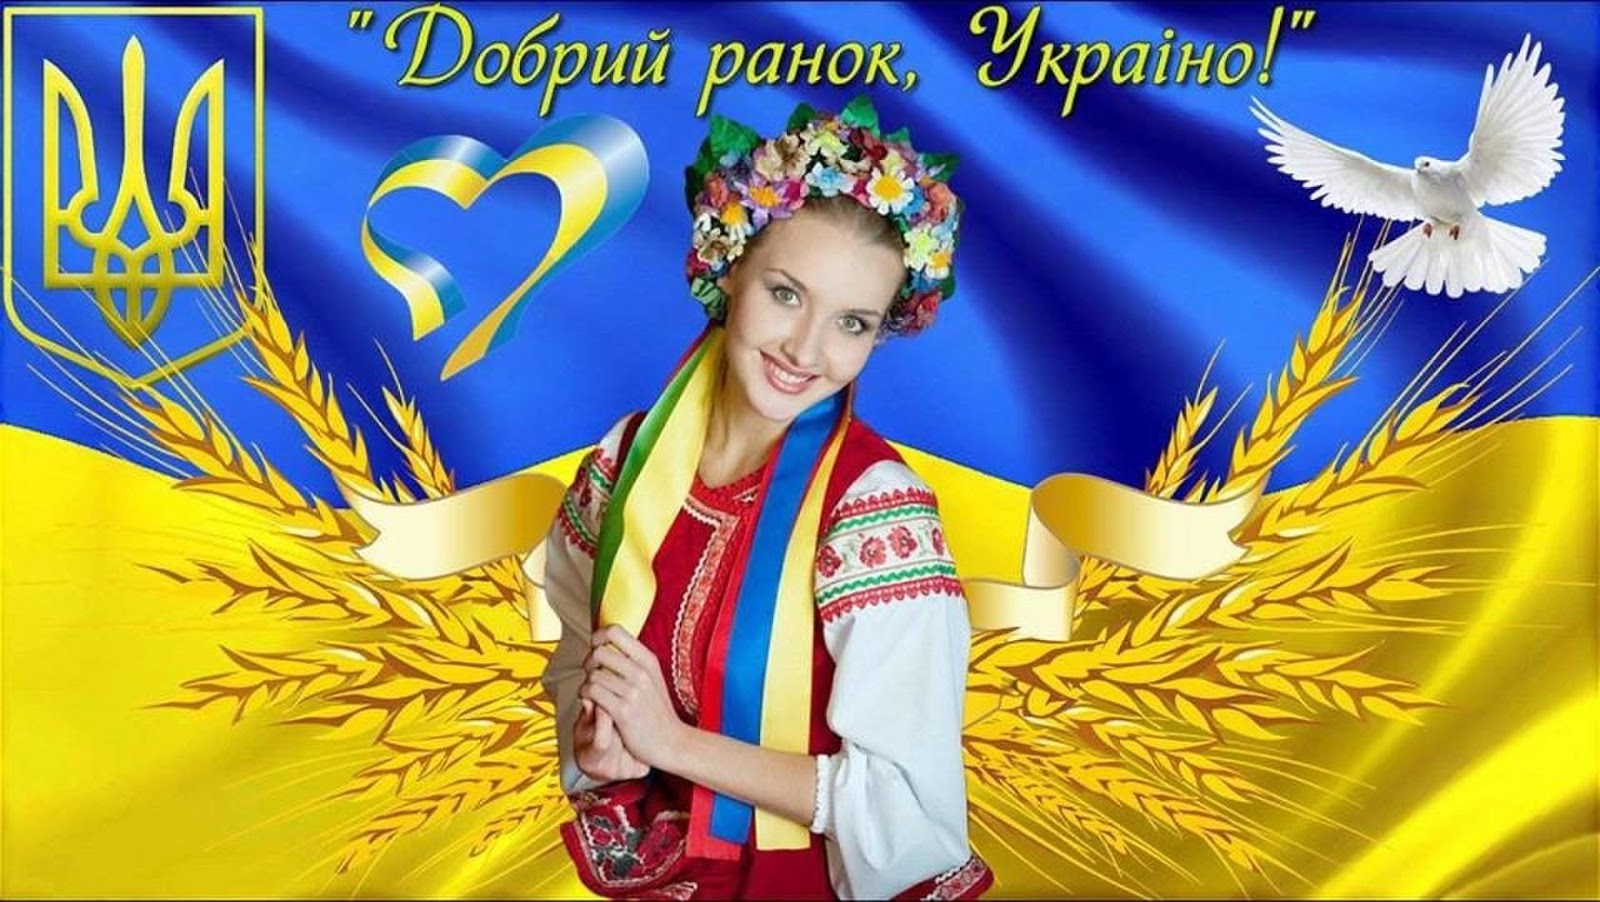 Мов україна. Добрый Ранок Украина. Приветствие на украинском. Доброго ранку на украинском открытка. Доброго ранку Україно открытка.